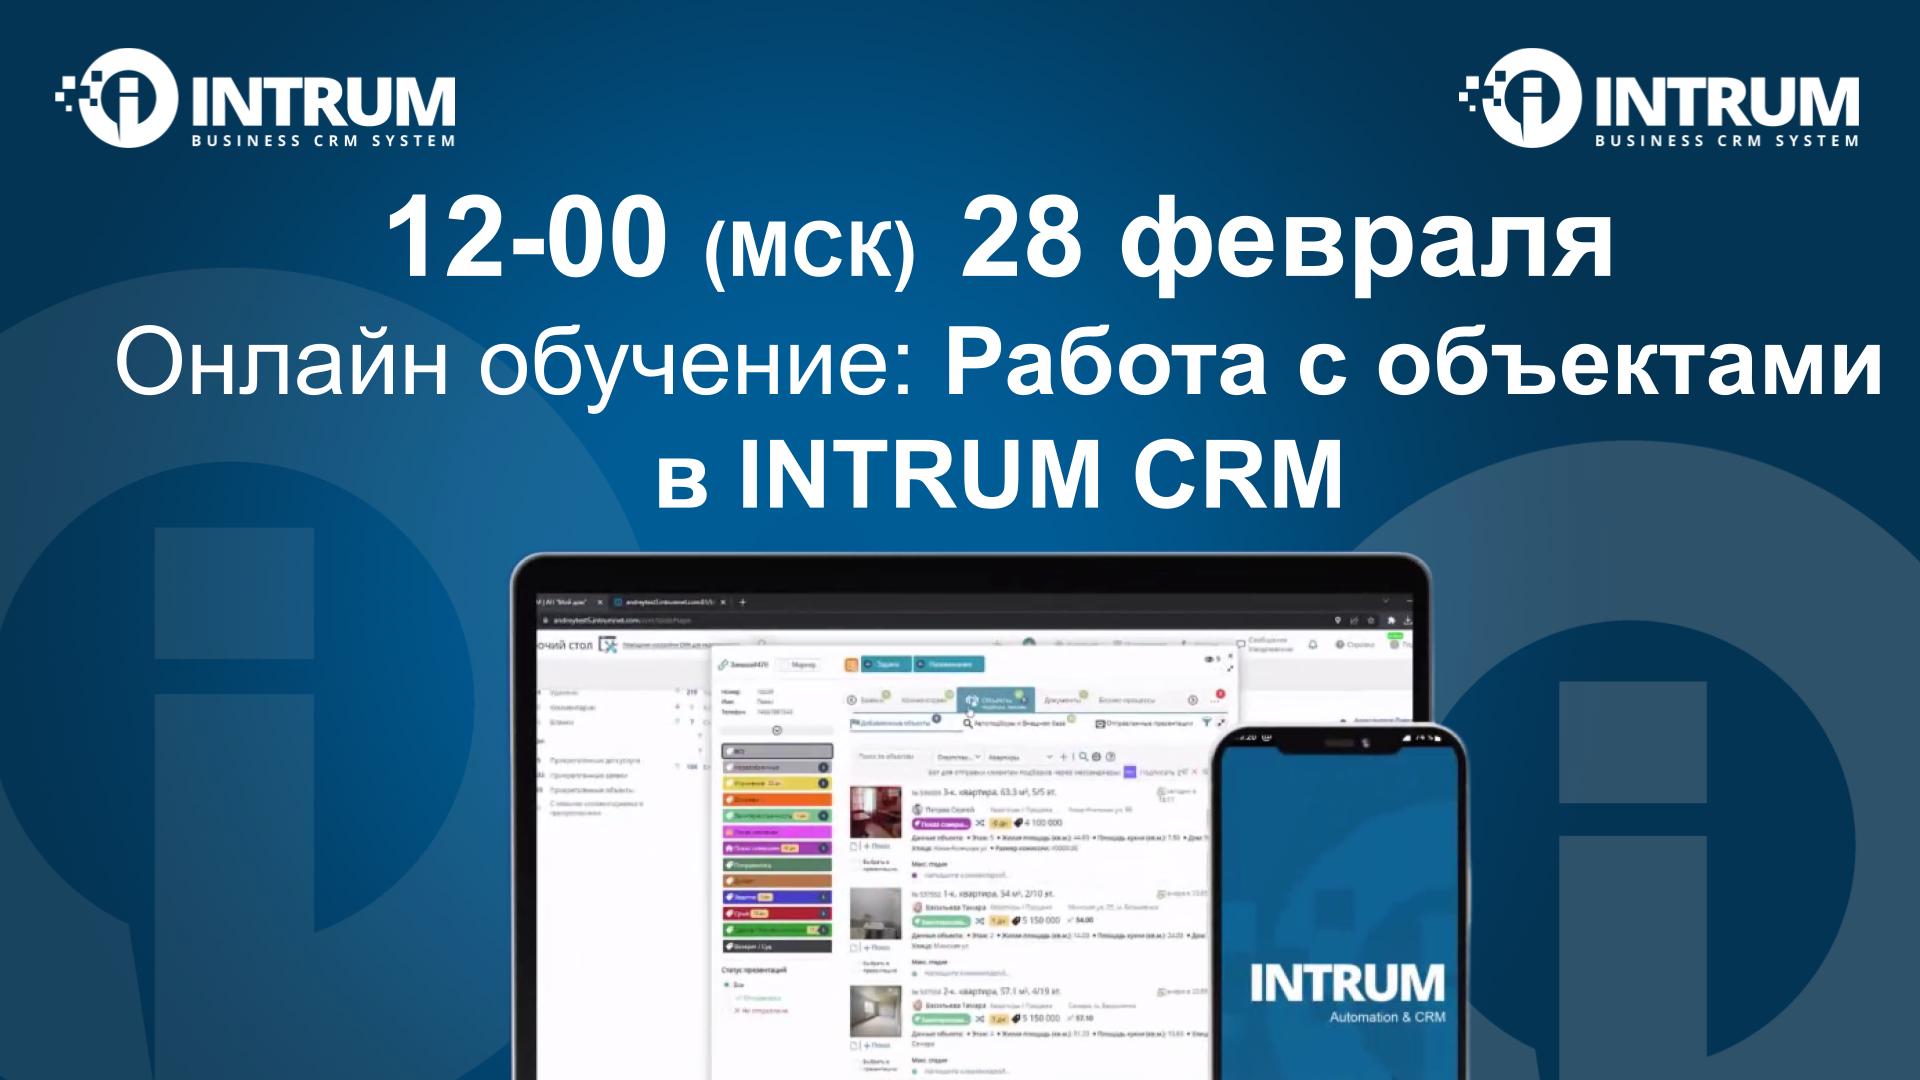 Онлайн обучение: Работа с объектами в INTRUM CRM